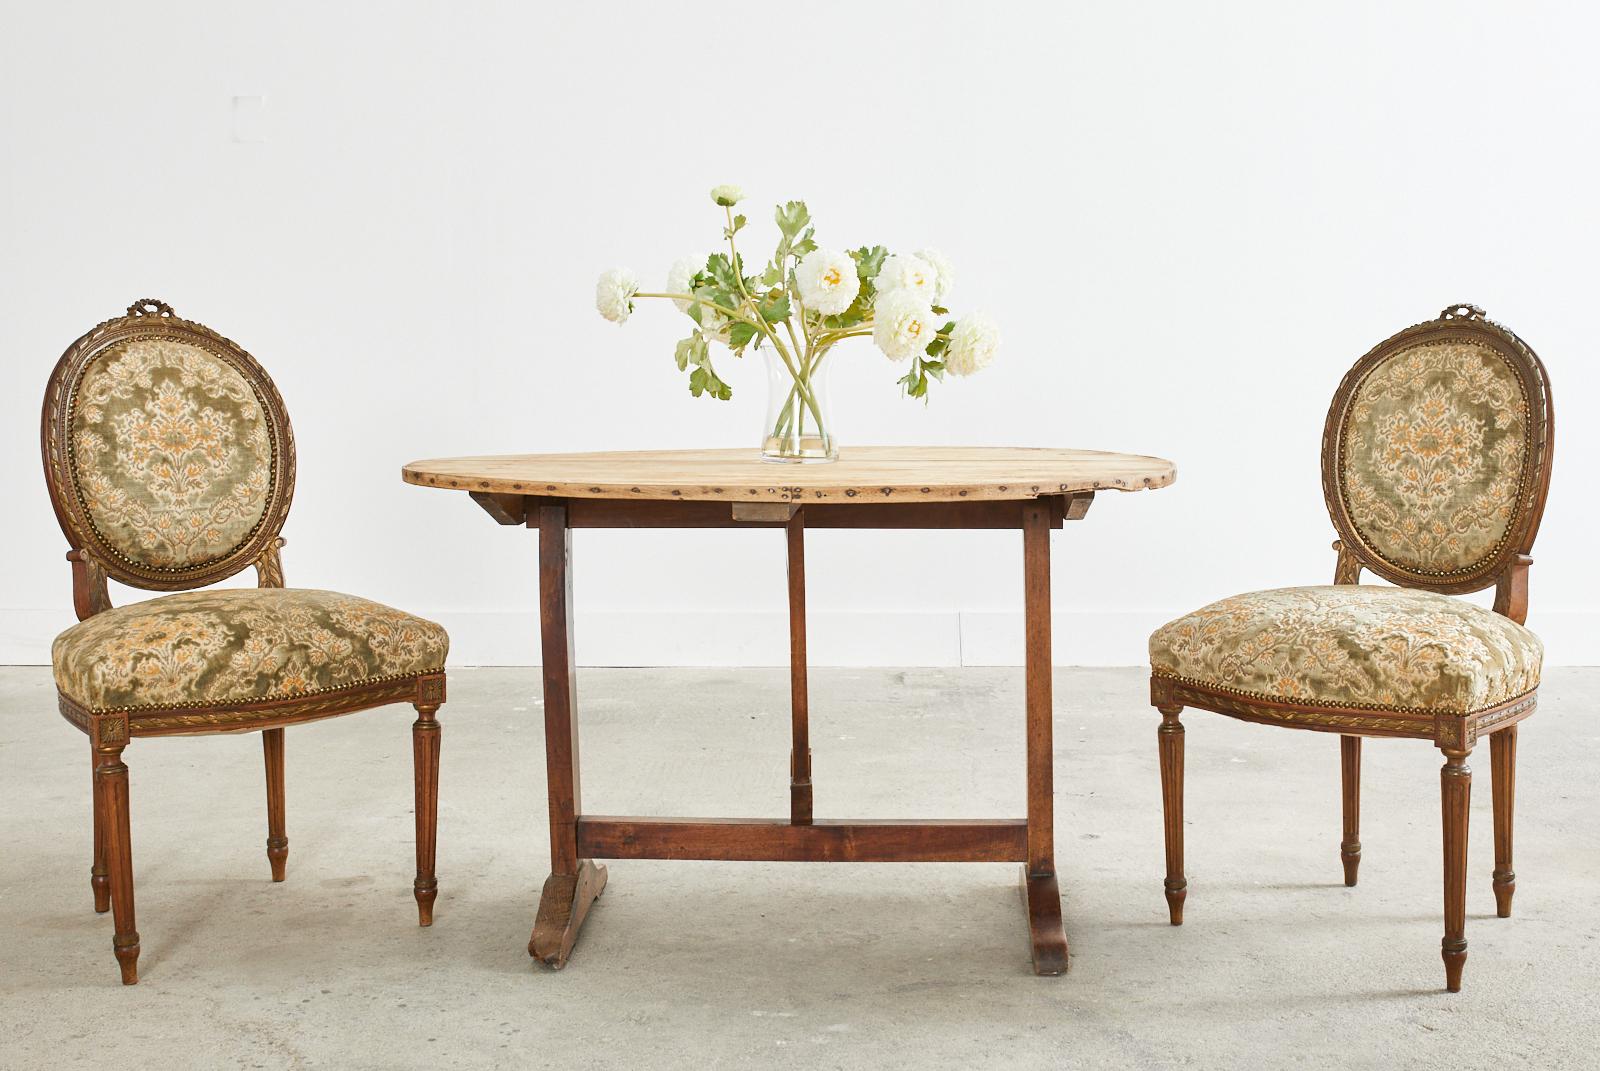 Klassischer Satz französischer Esszimmerstühle aus dem 19. Jahrhundert, hergestellt aus Mahagoni. Das Set besteht aus zwei Sesseln und zwei Beistellstühlen. Letztere sind 21